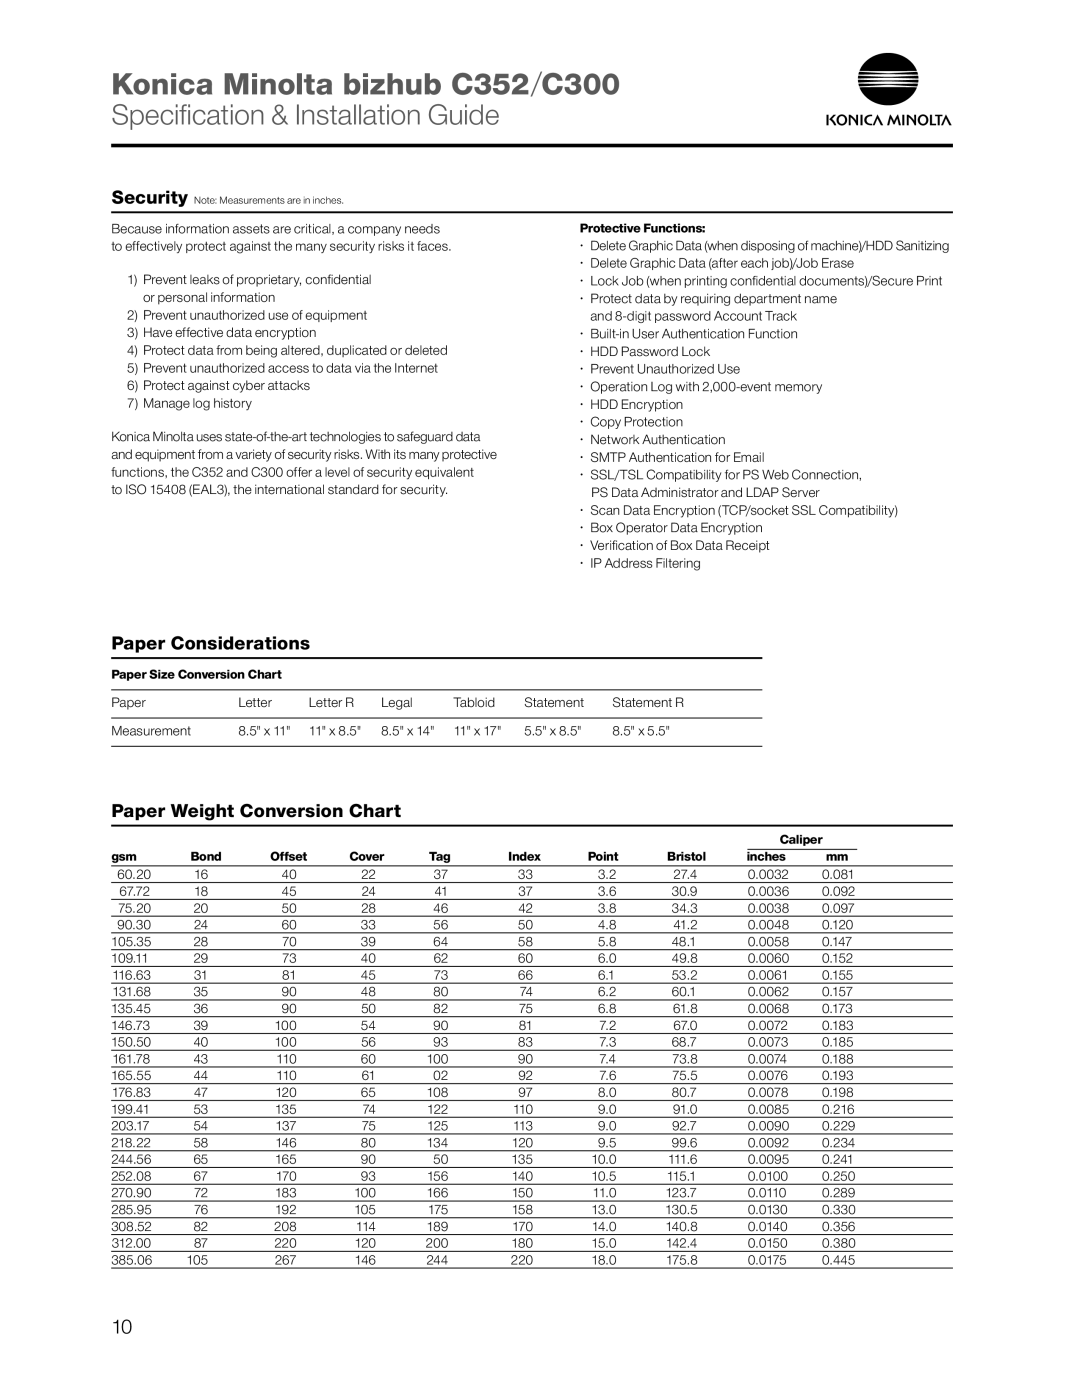 Konica Minolta dimensions Paper Considerations, Paper Weight Conversion Chart, Konica Minolta bizhub C352/C300 